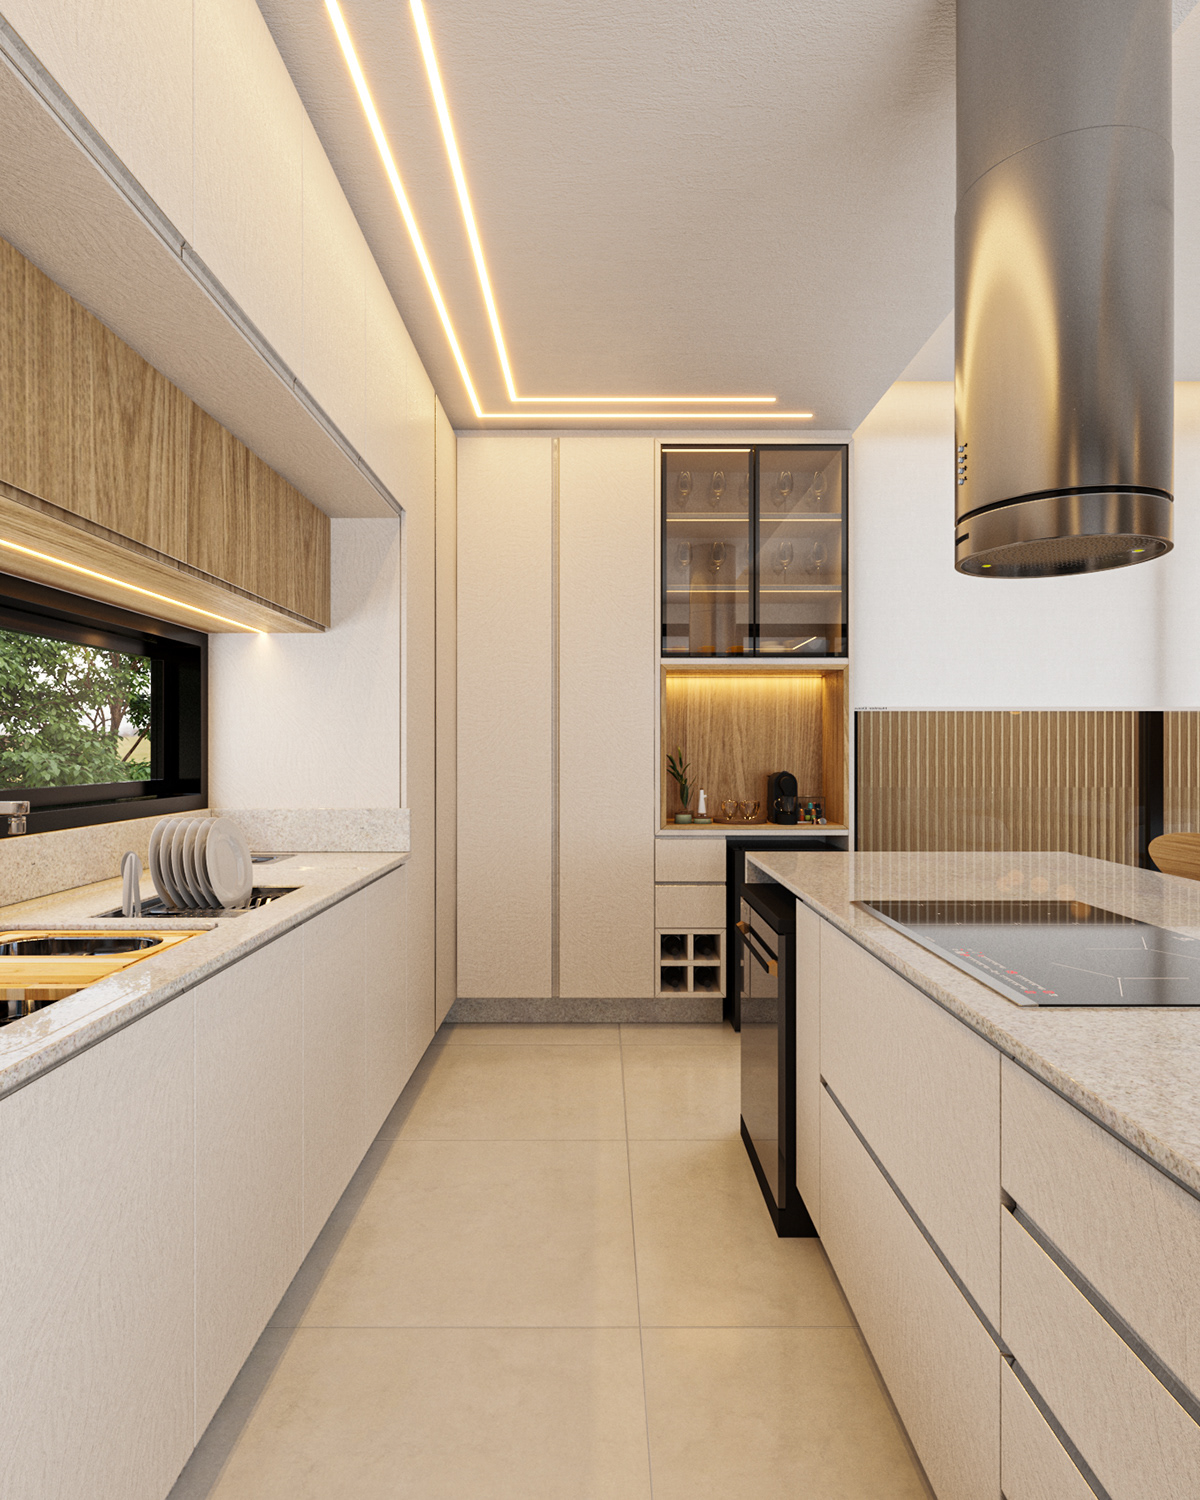 arquitecture interior design  exterior modern visualization archviz Render black kitchen design